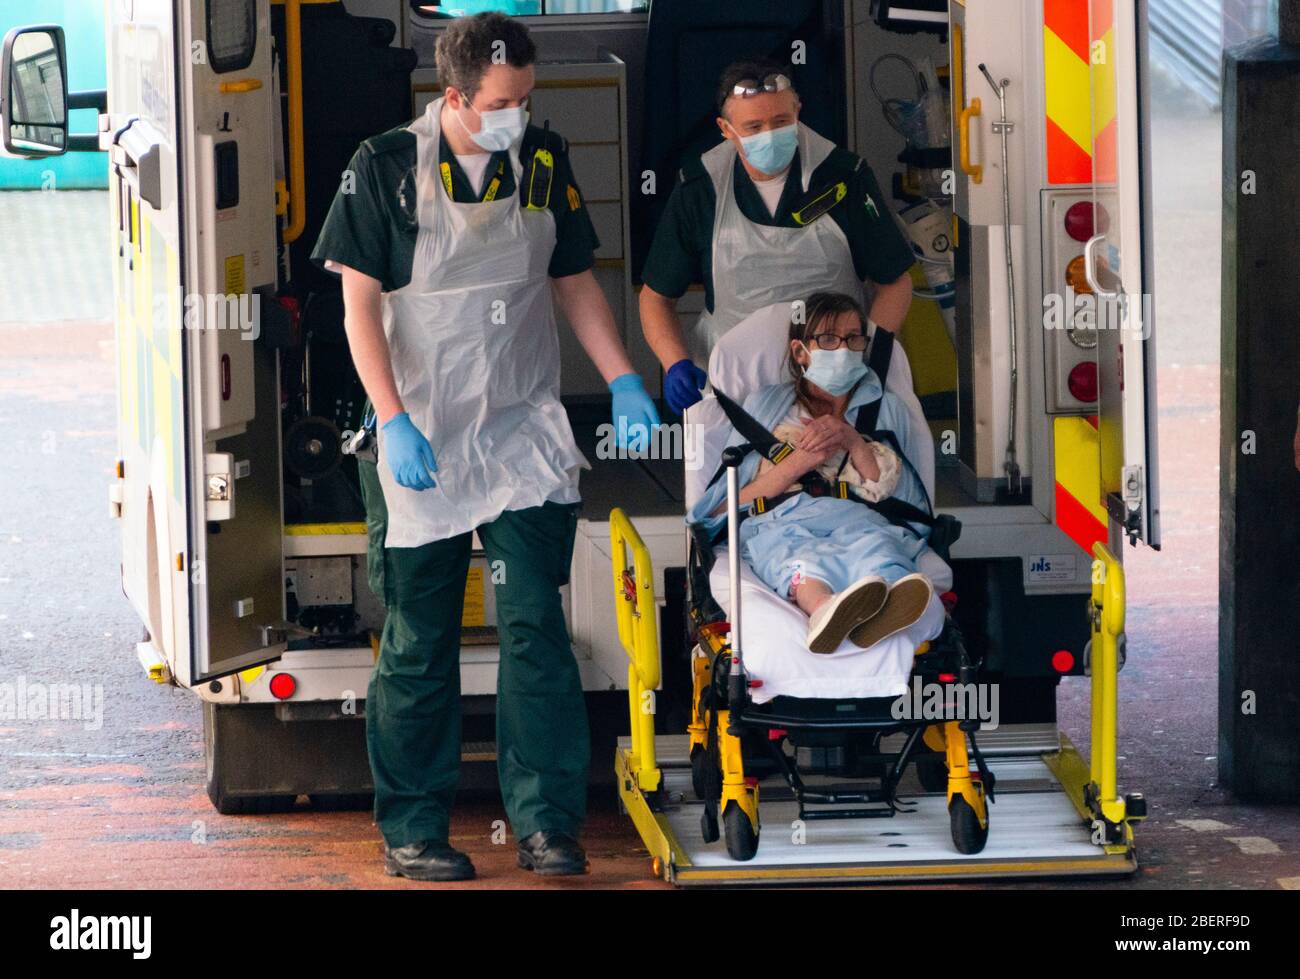 Glasgow, Schottland, Großbritannien. 15. April 2020. Der Patient wird von Mitarbeitern der A&E-Abteilung des Glasgow Royal Infirmary mit PSA aus dem Krankenwagen entladen. Iain Masterton/Alamy Live News Stockfoto